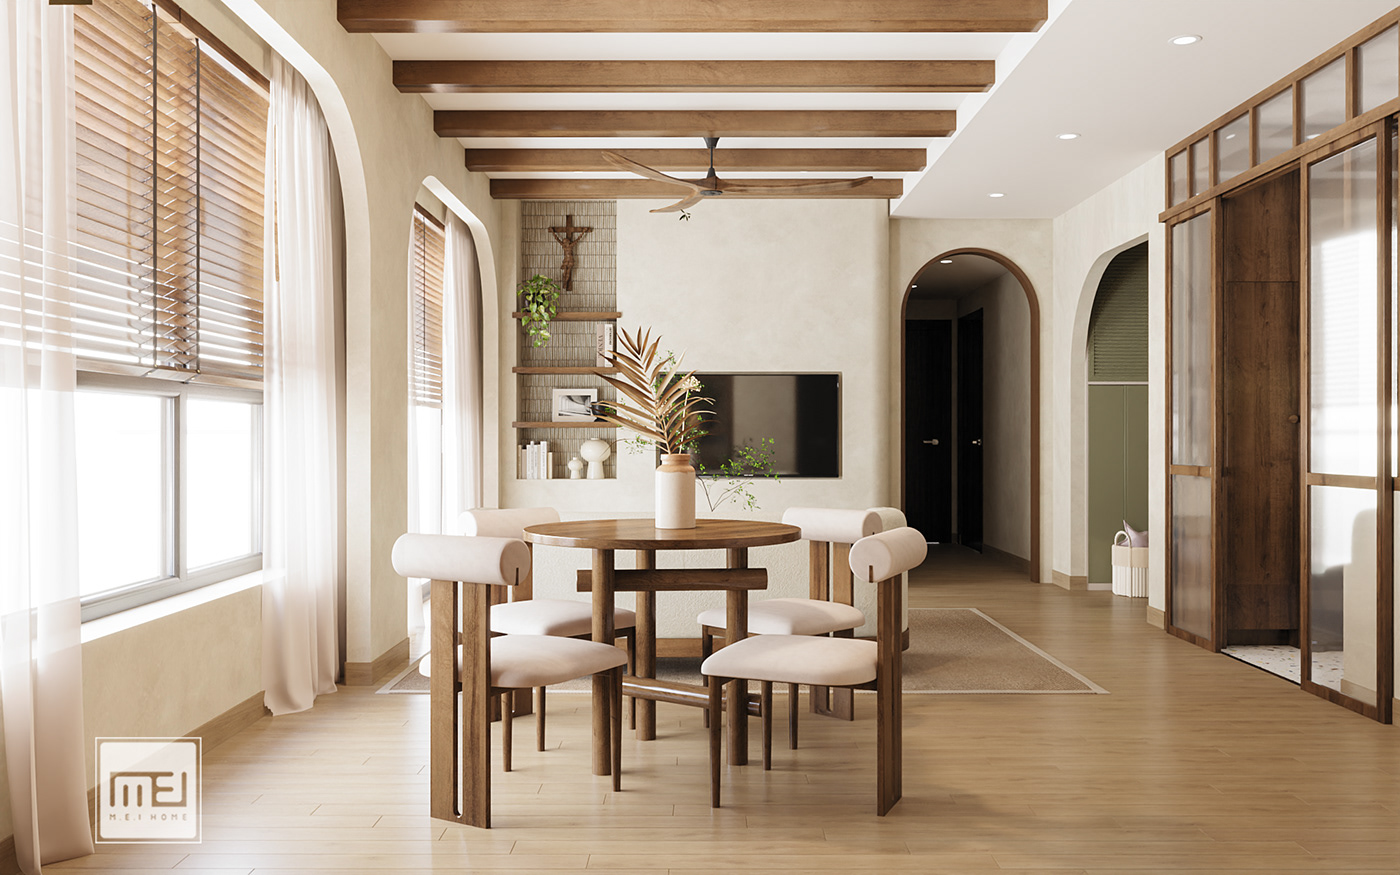 3D architecture Render interior design  living room design